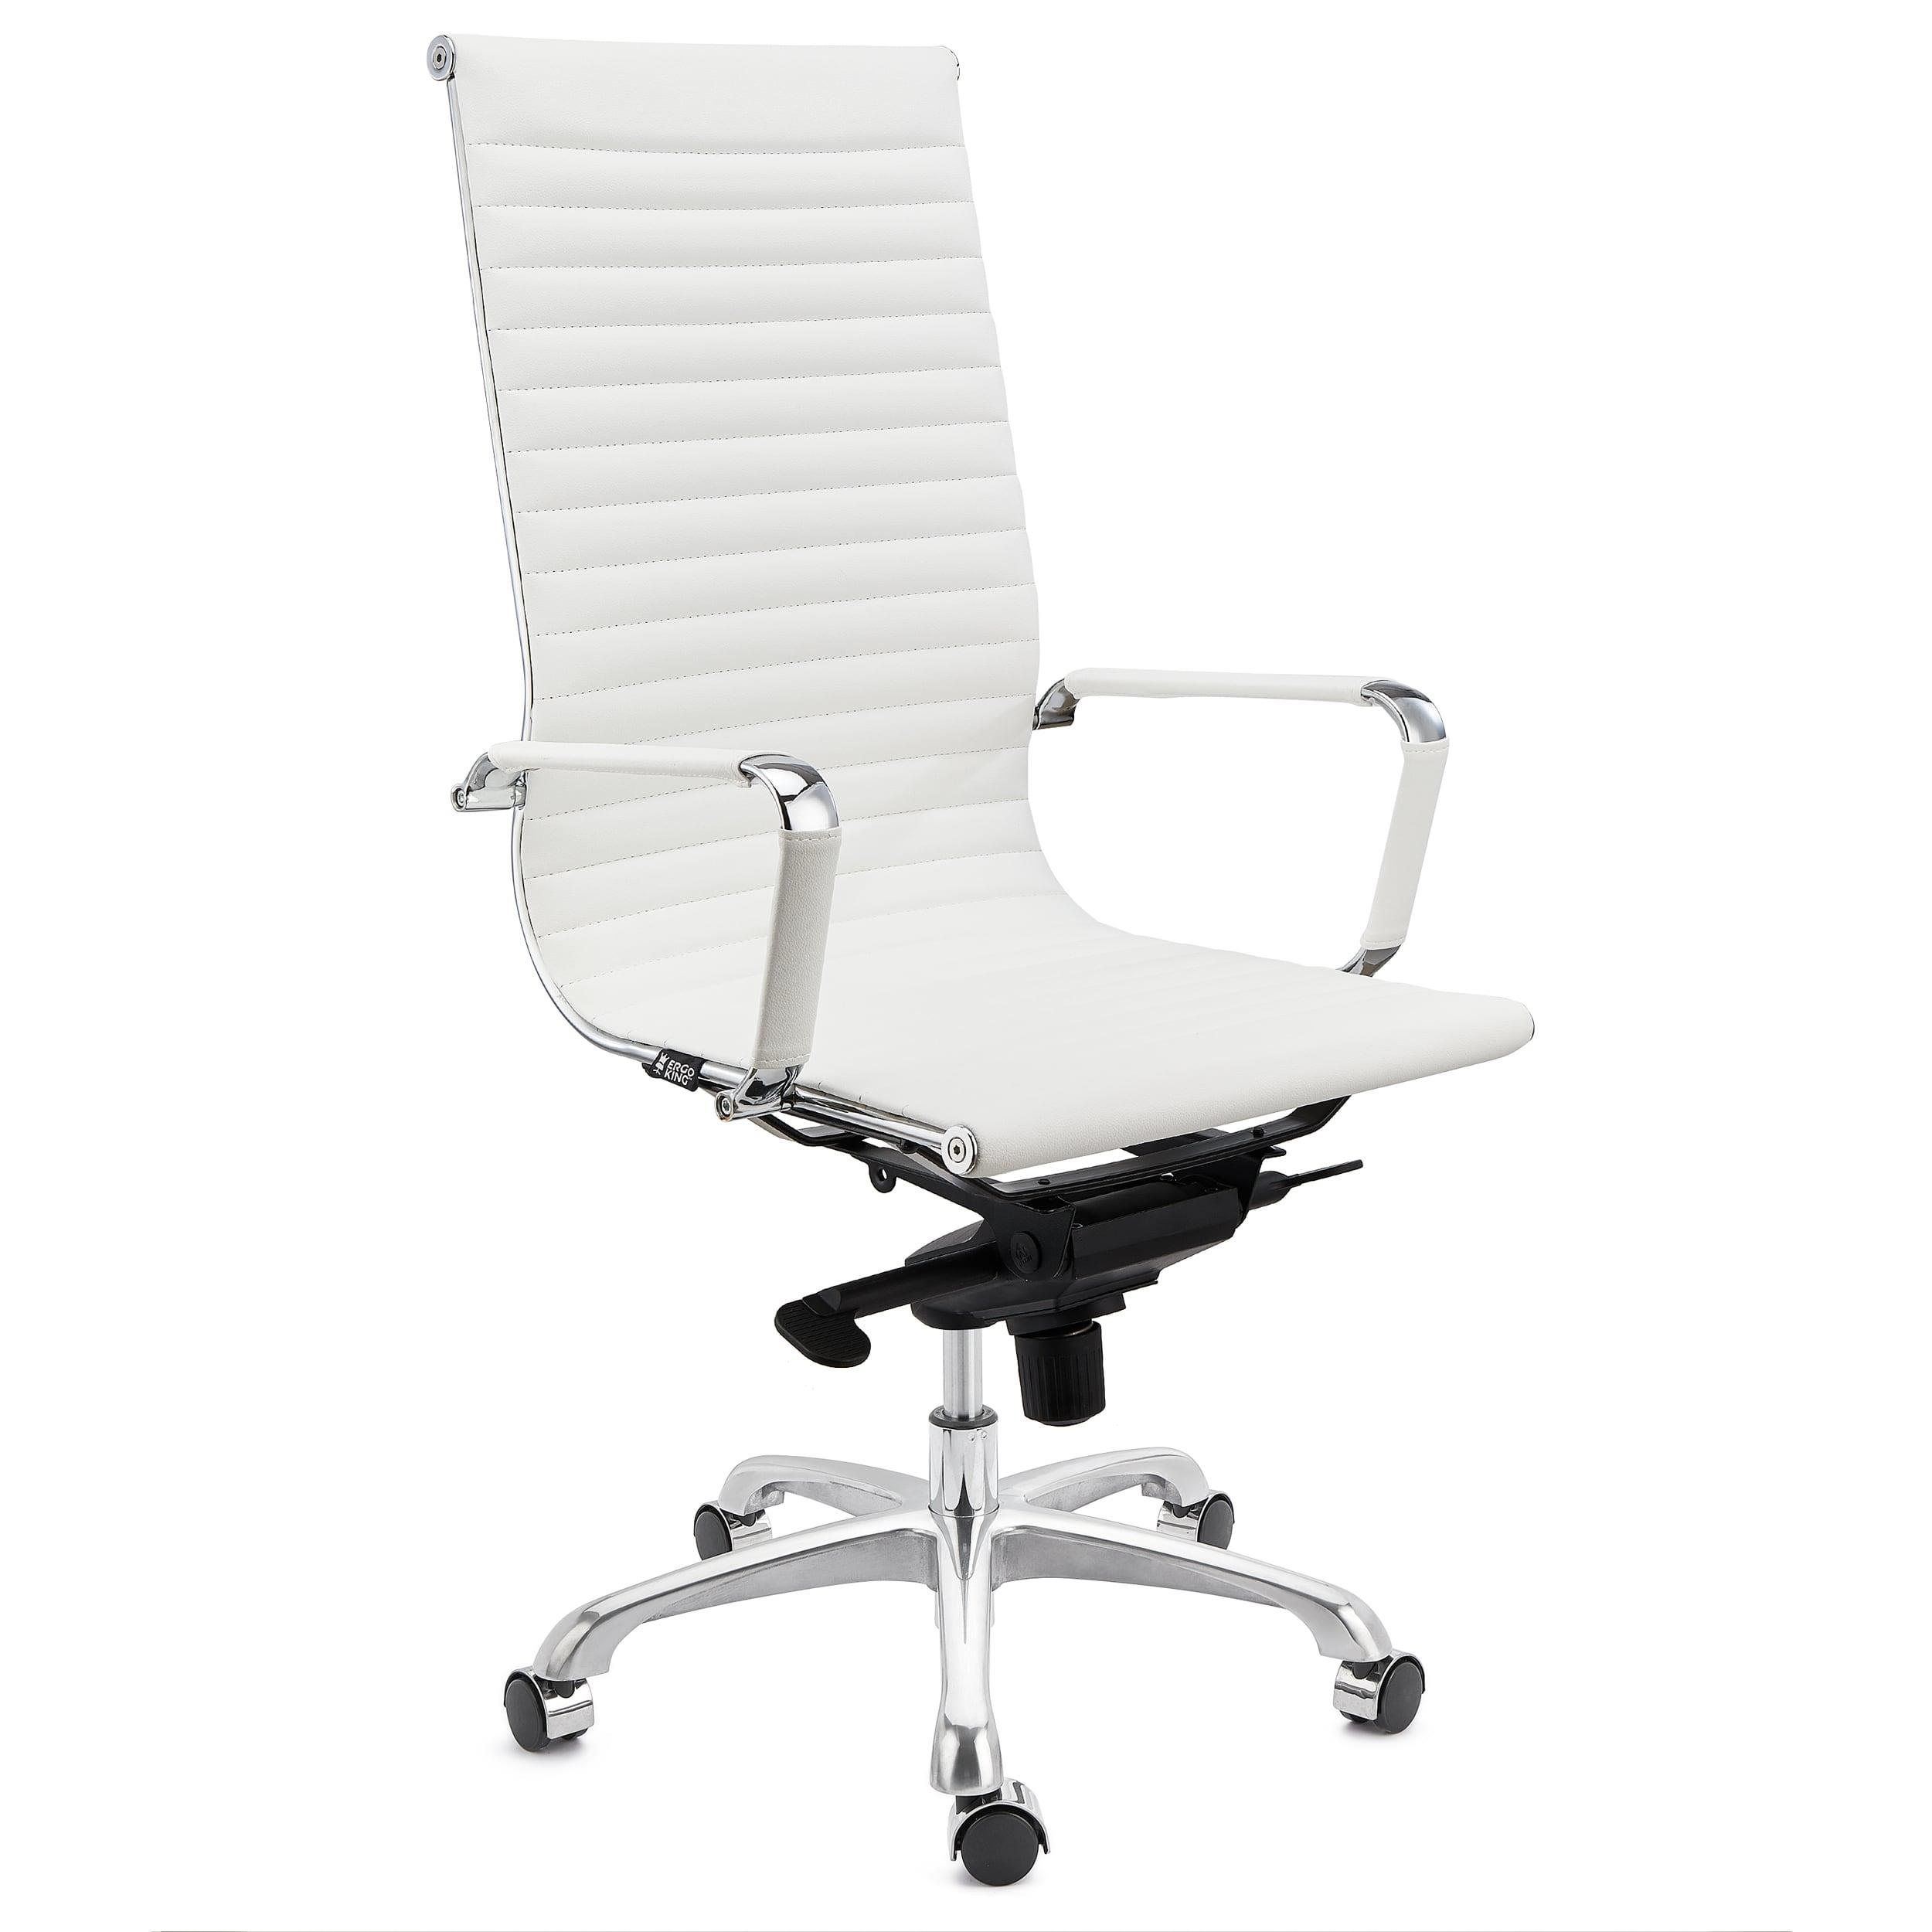 Chaise de Bureau DORIS, structure Métallique Chromée, Finitons élégantes, cuir, Blanc